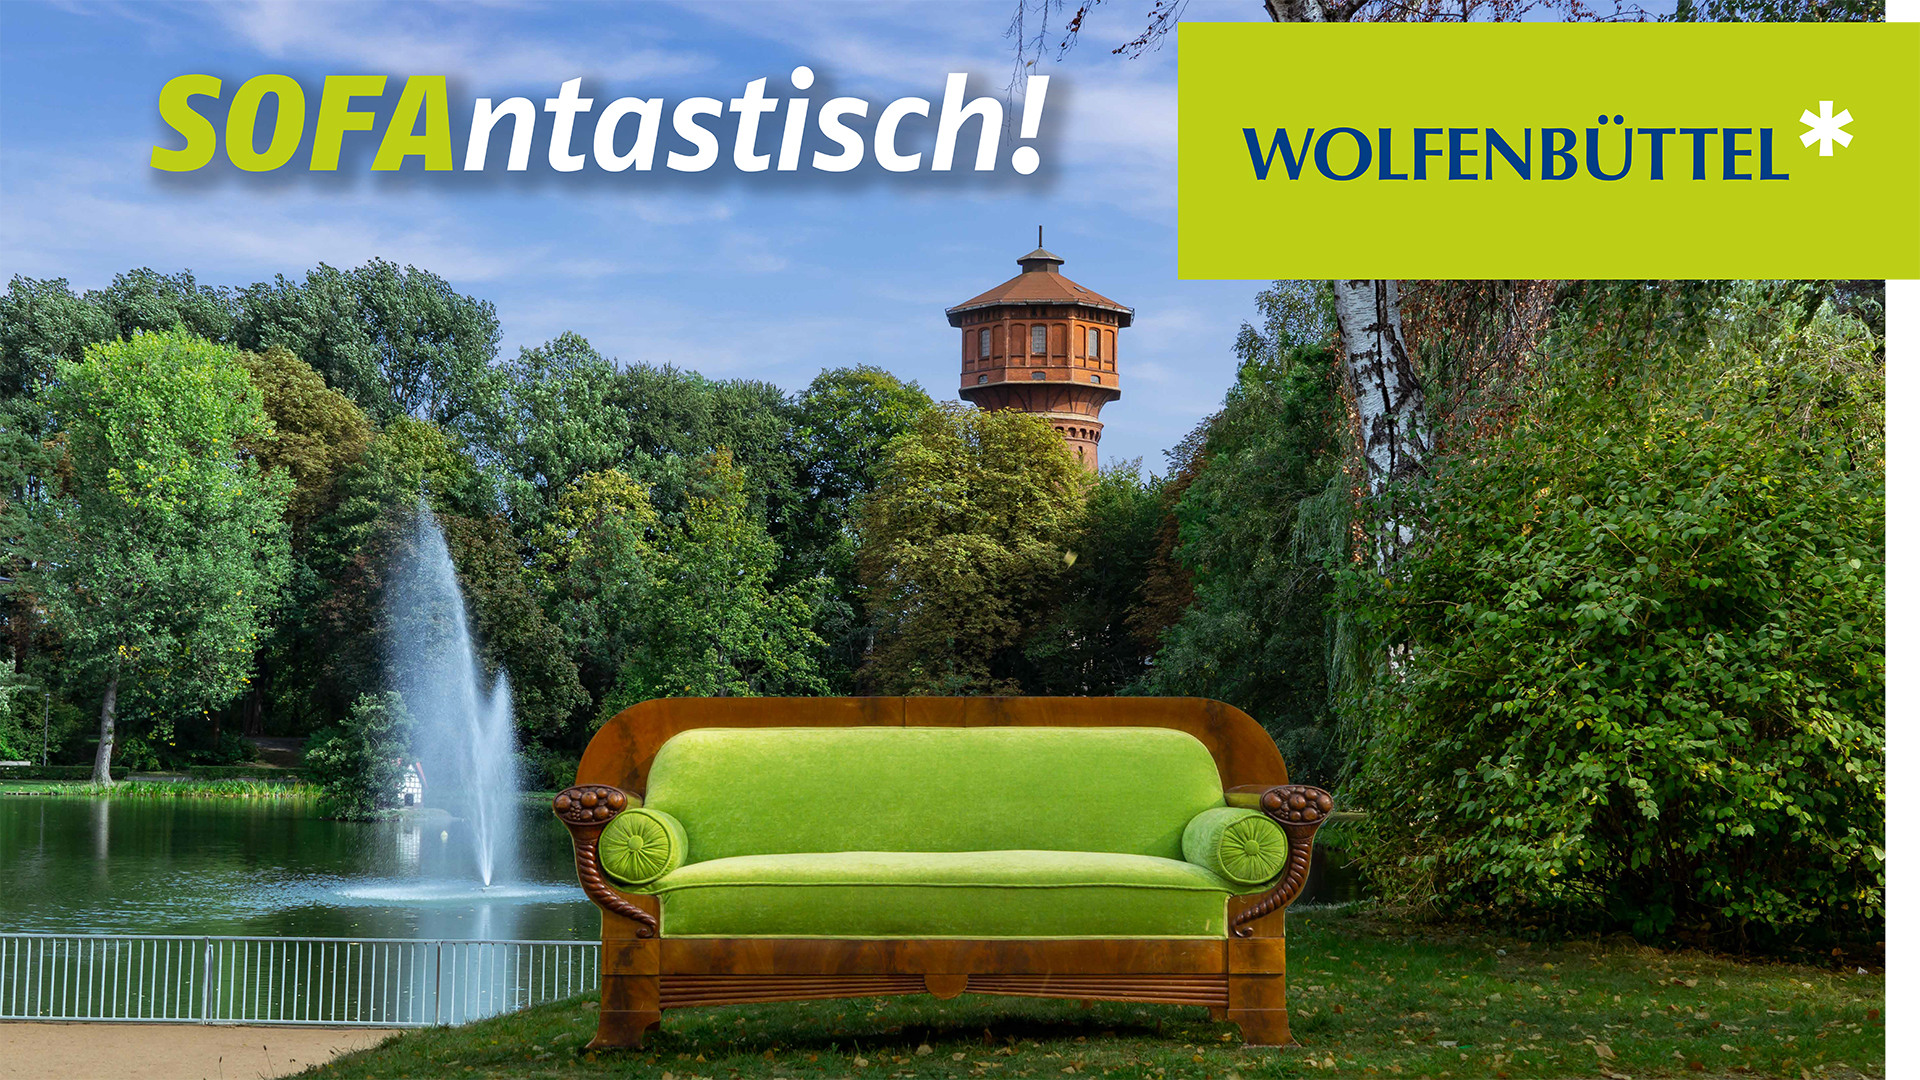 Ein Sofa steht auf einer Grünfläche vor der Fontäne des Stadtgrabens. Im Hintergrund sind Bäume und der Wasserturm Wolfenbüttels zu erkennen. Das Plakatmotiv wird ergänzt durch die Schriftzüge "Wolfenbüttel" und "Sofantastisch!"